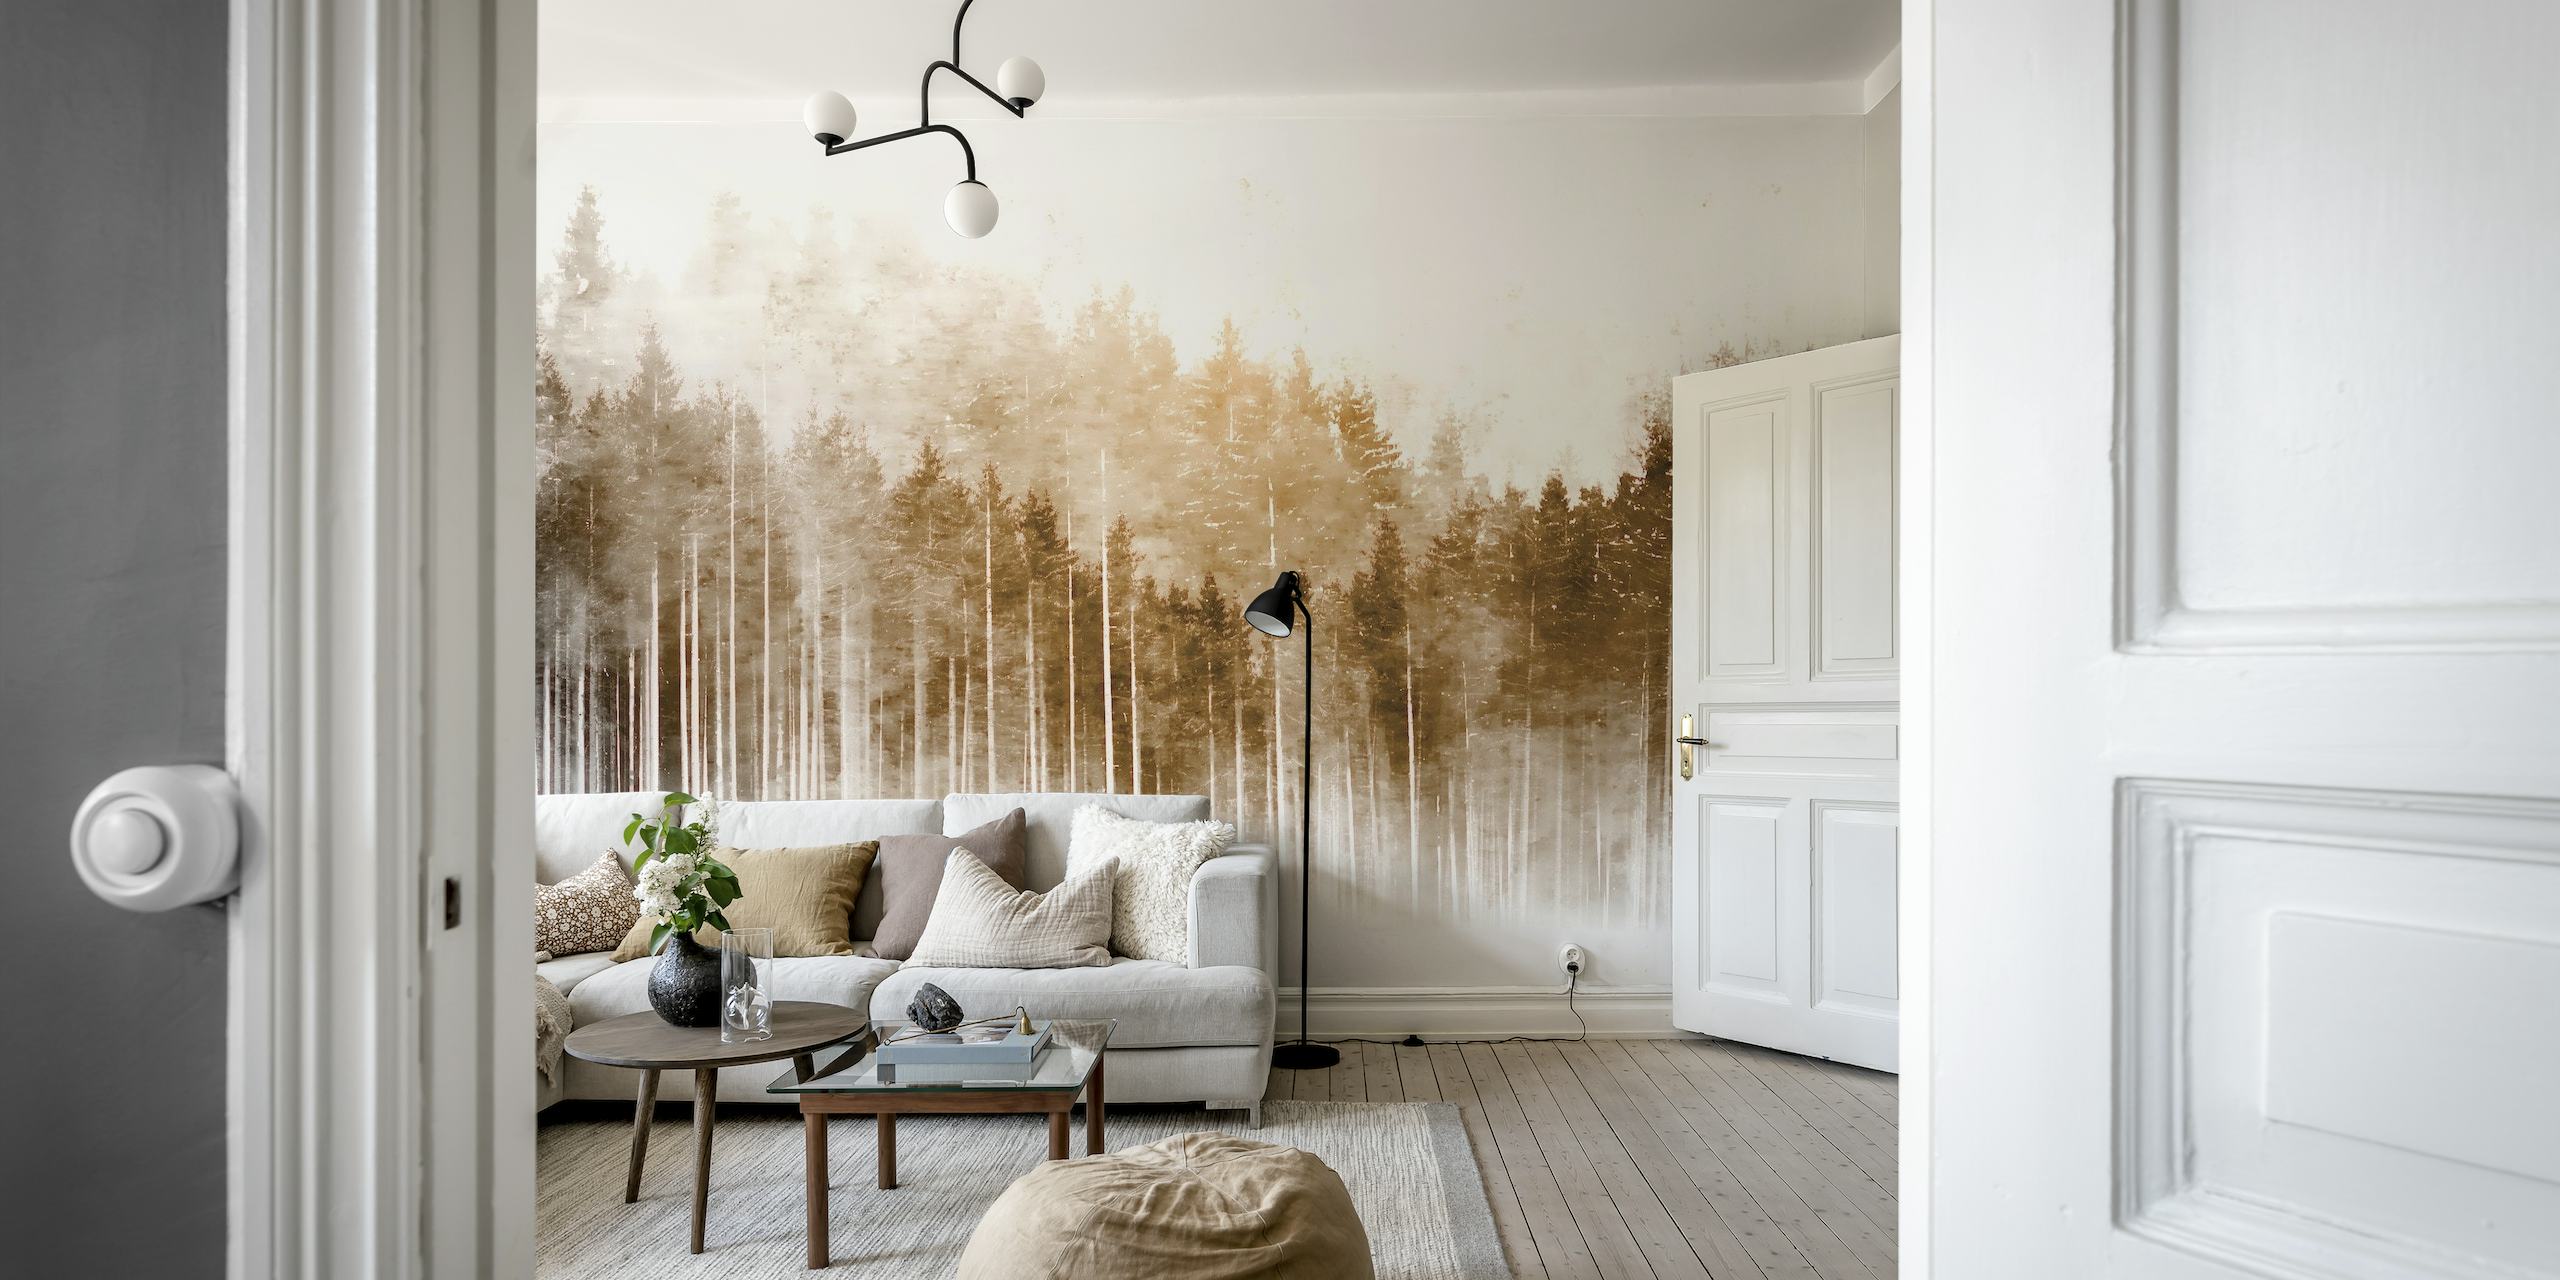 mural de parede em tons neutros de uma floresta de pinheiros enevoada criando uma atmosfera tranquila de inspiração japonesa